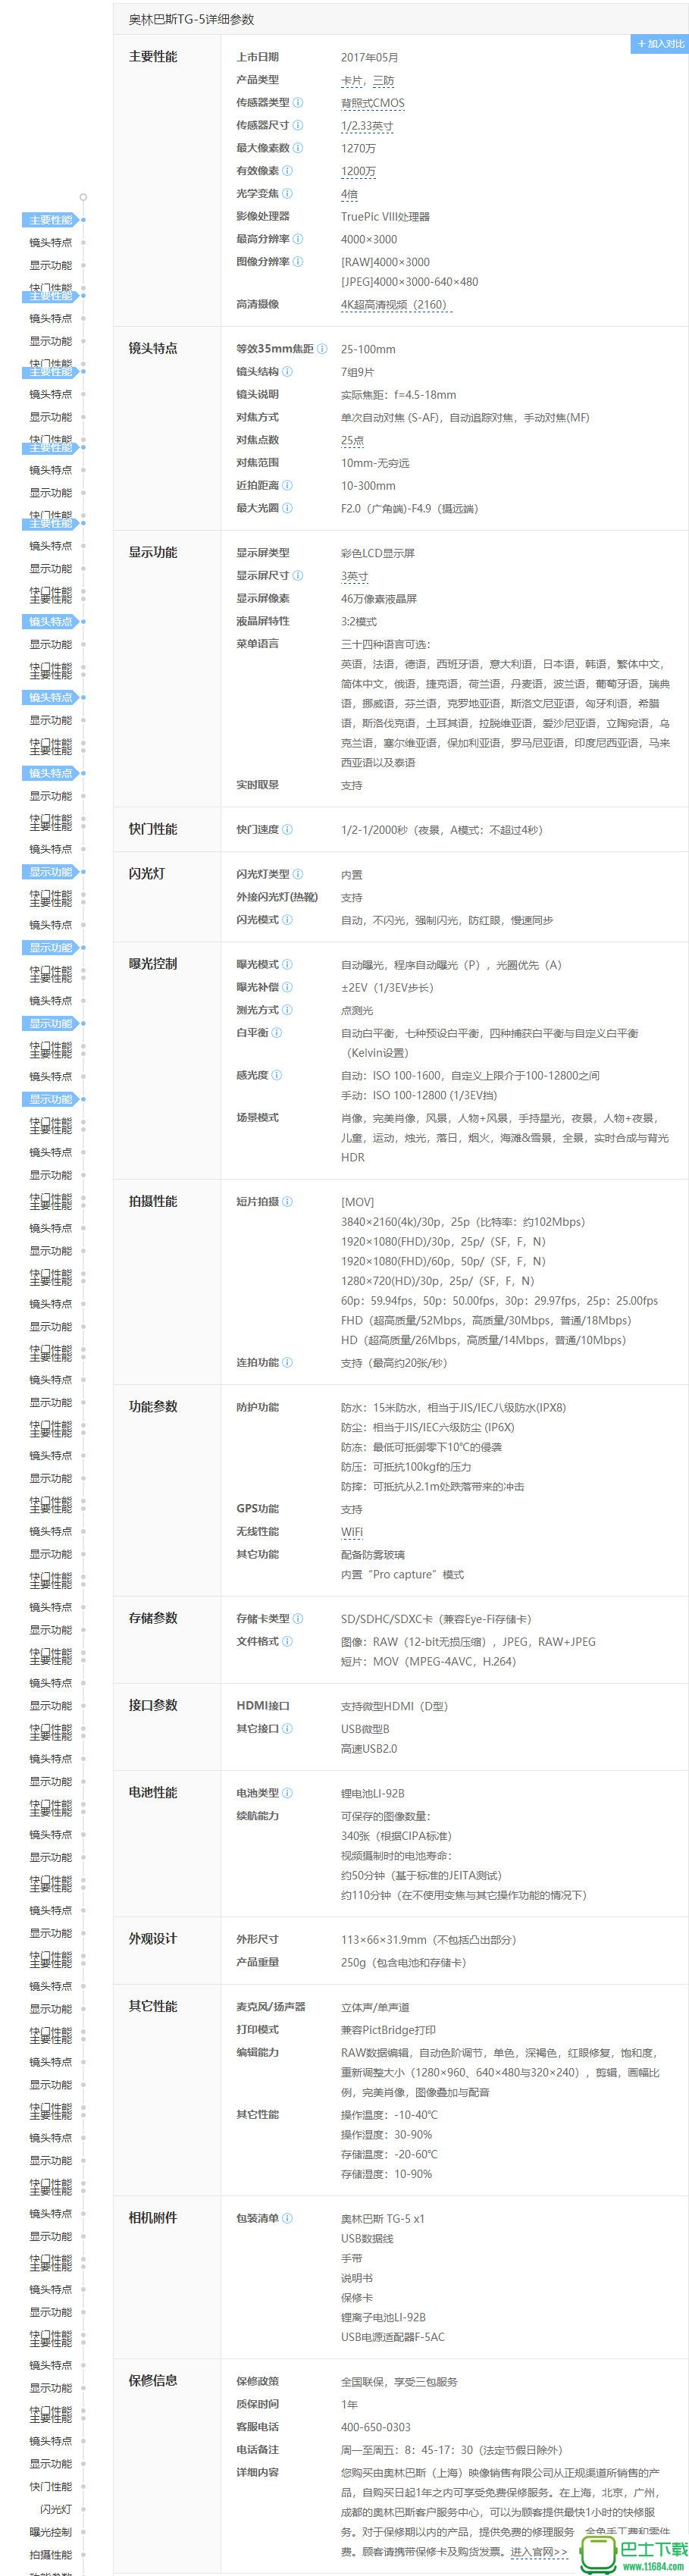 奥林巴斯TG-5使用说明书 中文版（pdf格式）下载